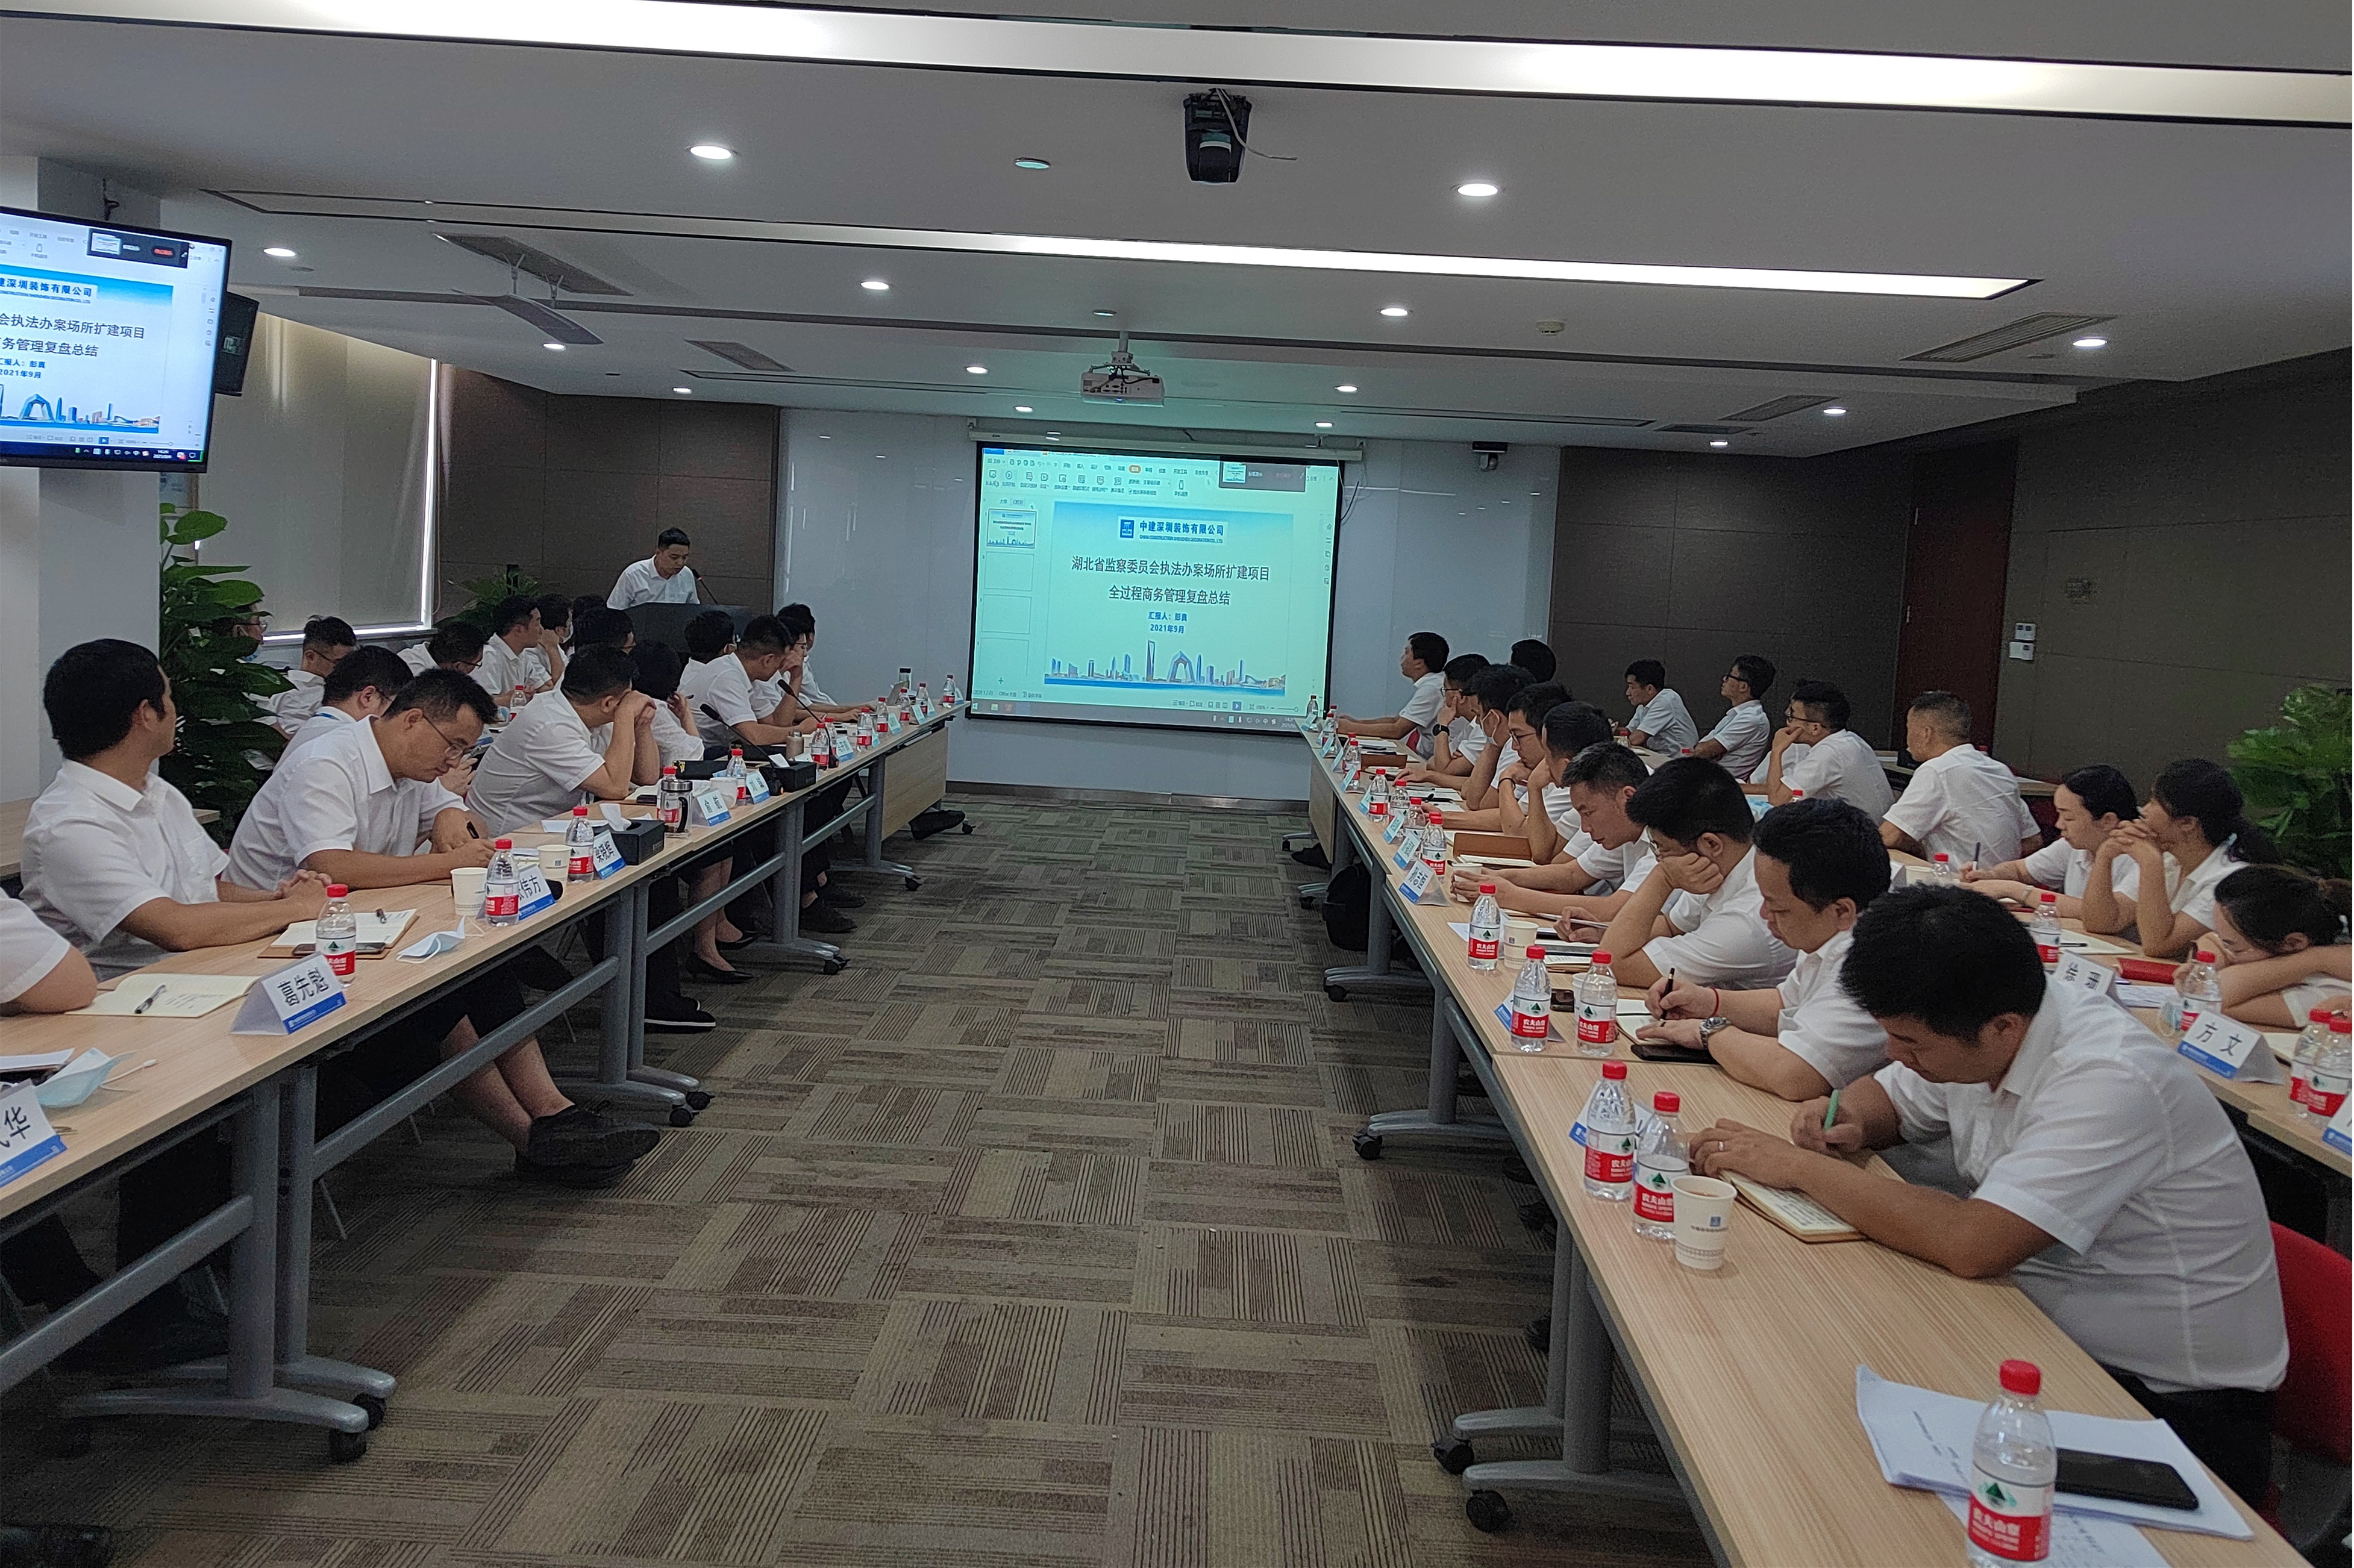 芒果体育-官方(中国)有限公司
武汉分公司成功举办EPC专题研讨会